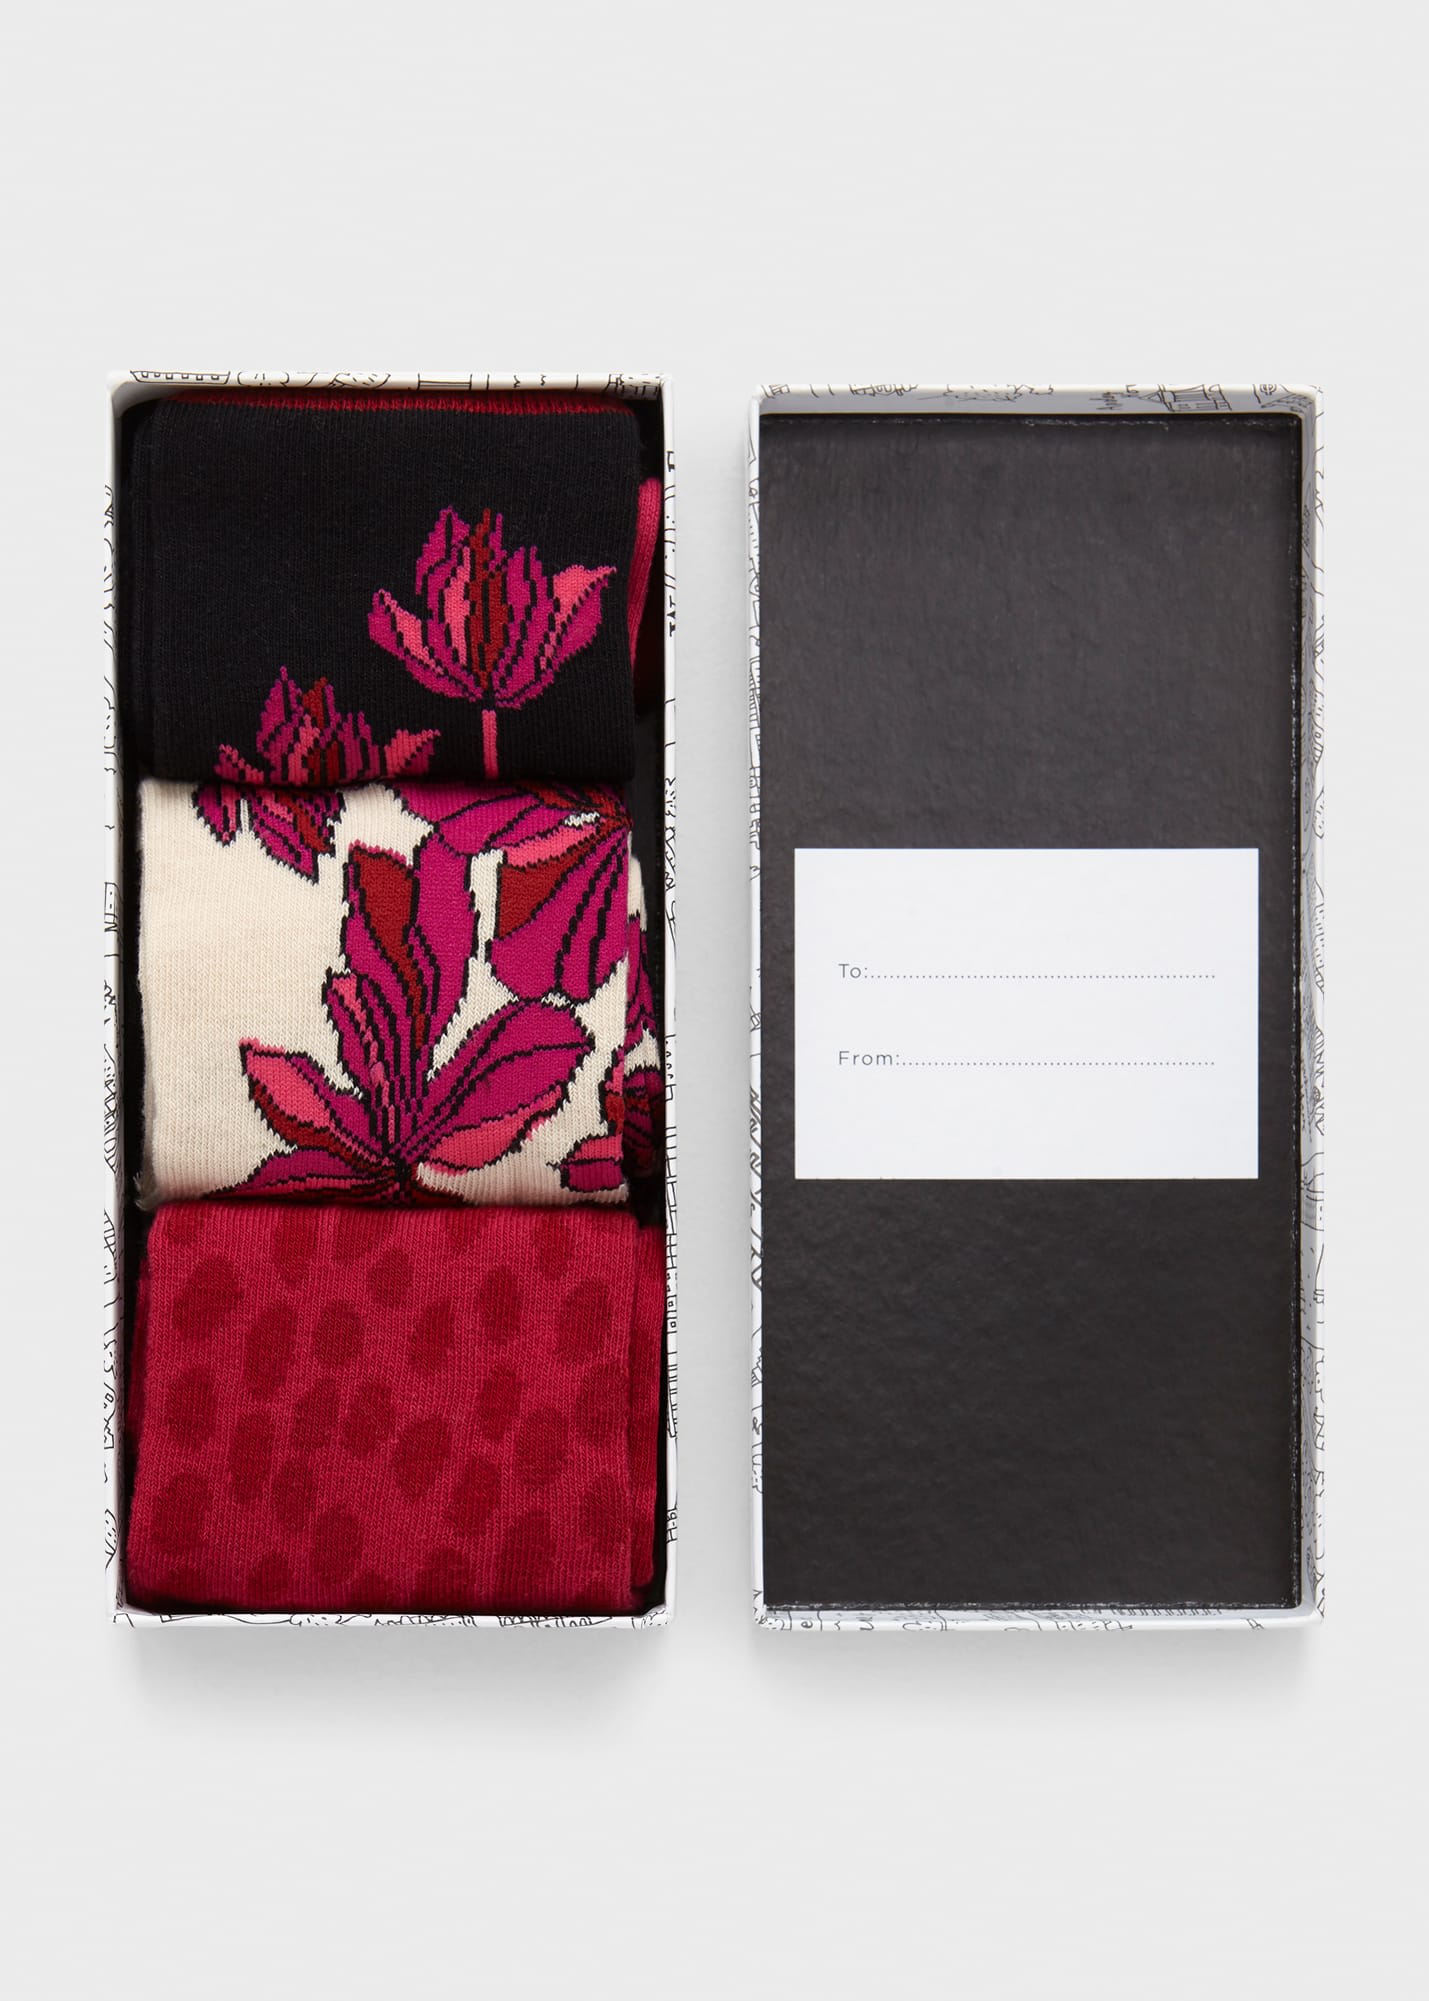 Floral Sock Set 0124/1475/055000 Pink-Multi